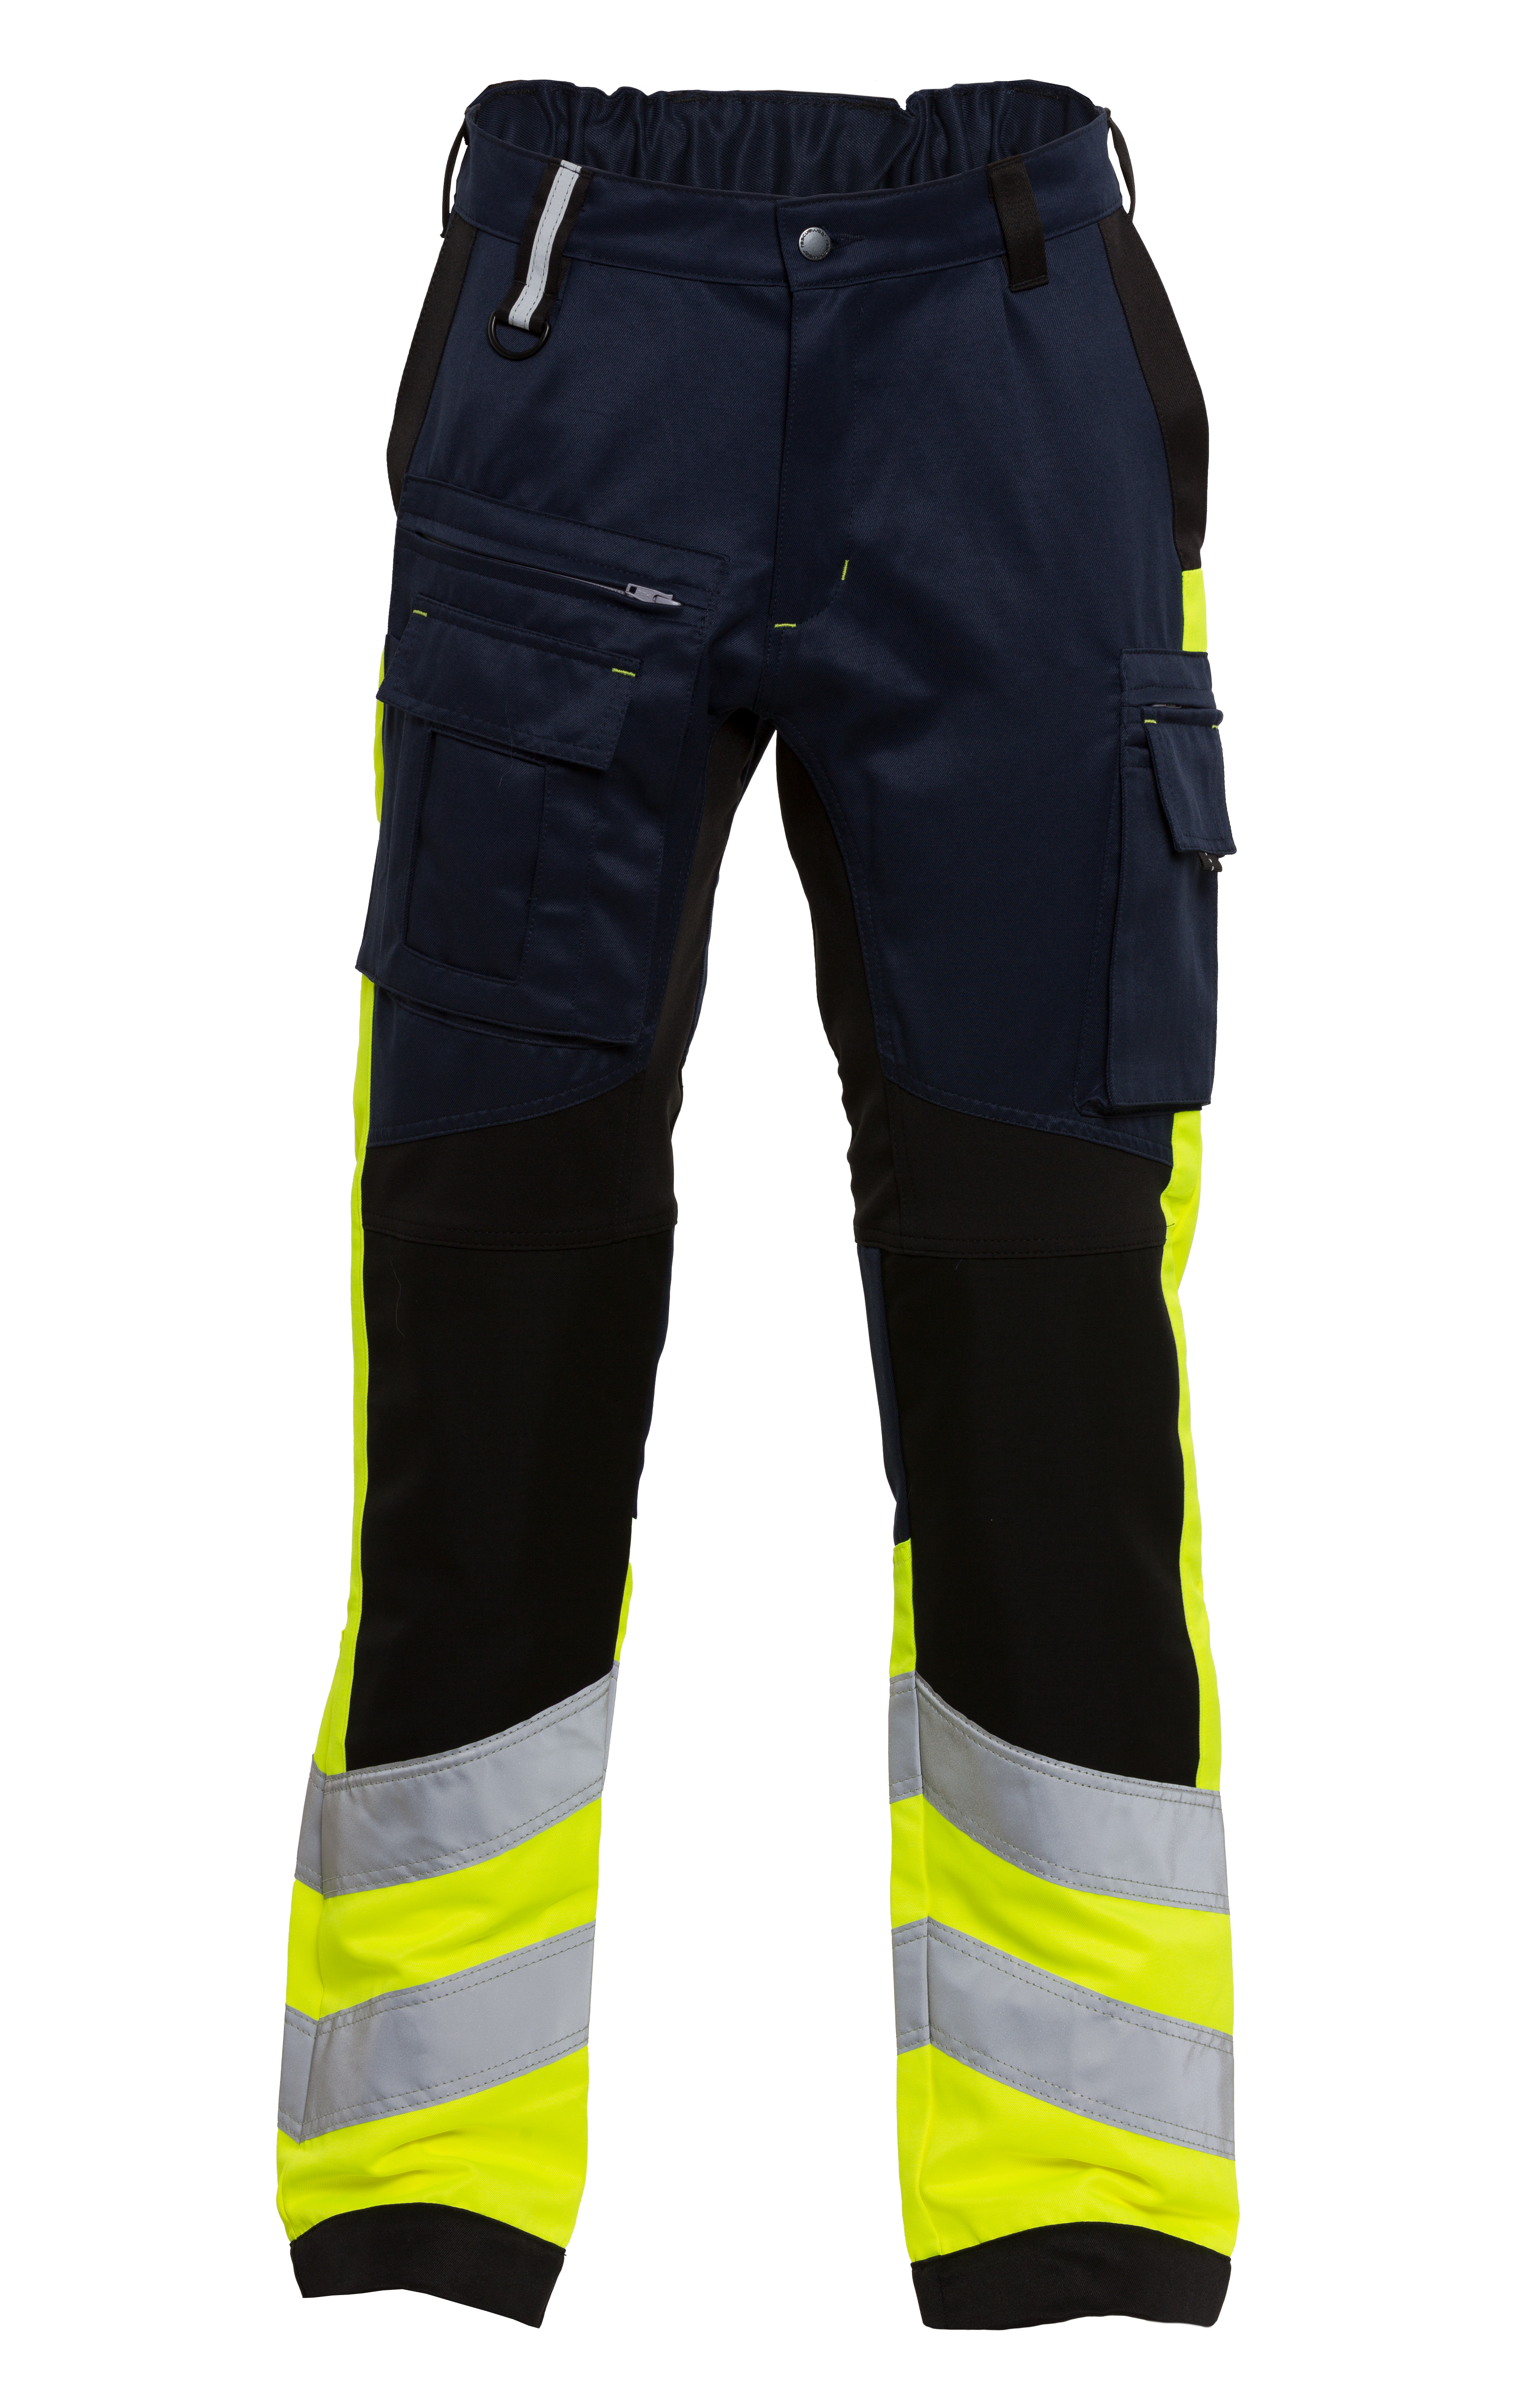 Rescuewear Unisex Hose Stretch HiVis Klasse 1 Marineblau / Schwarz / Neon Gelb  - 35